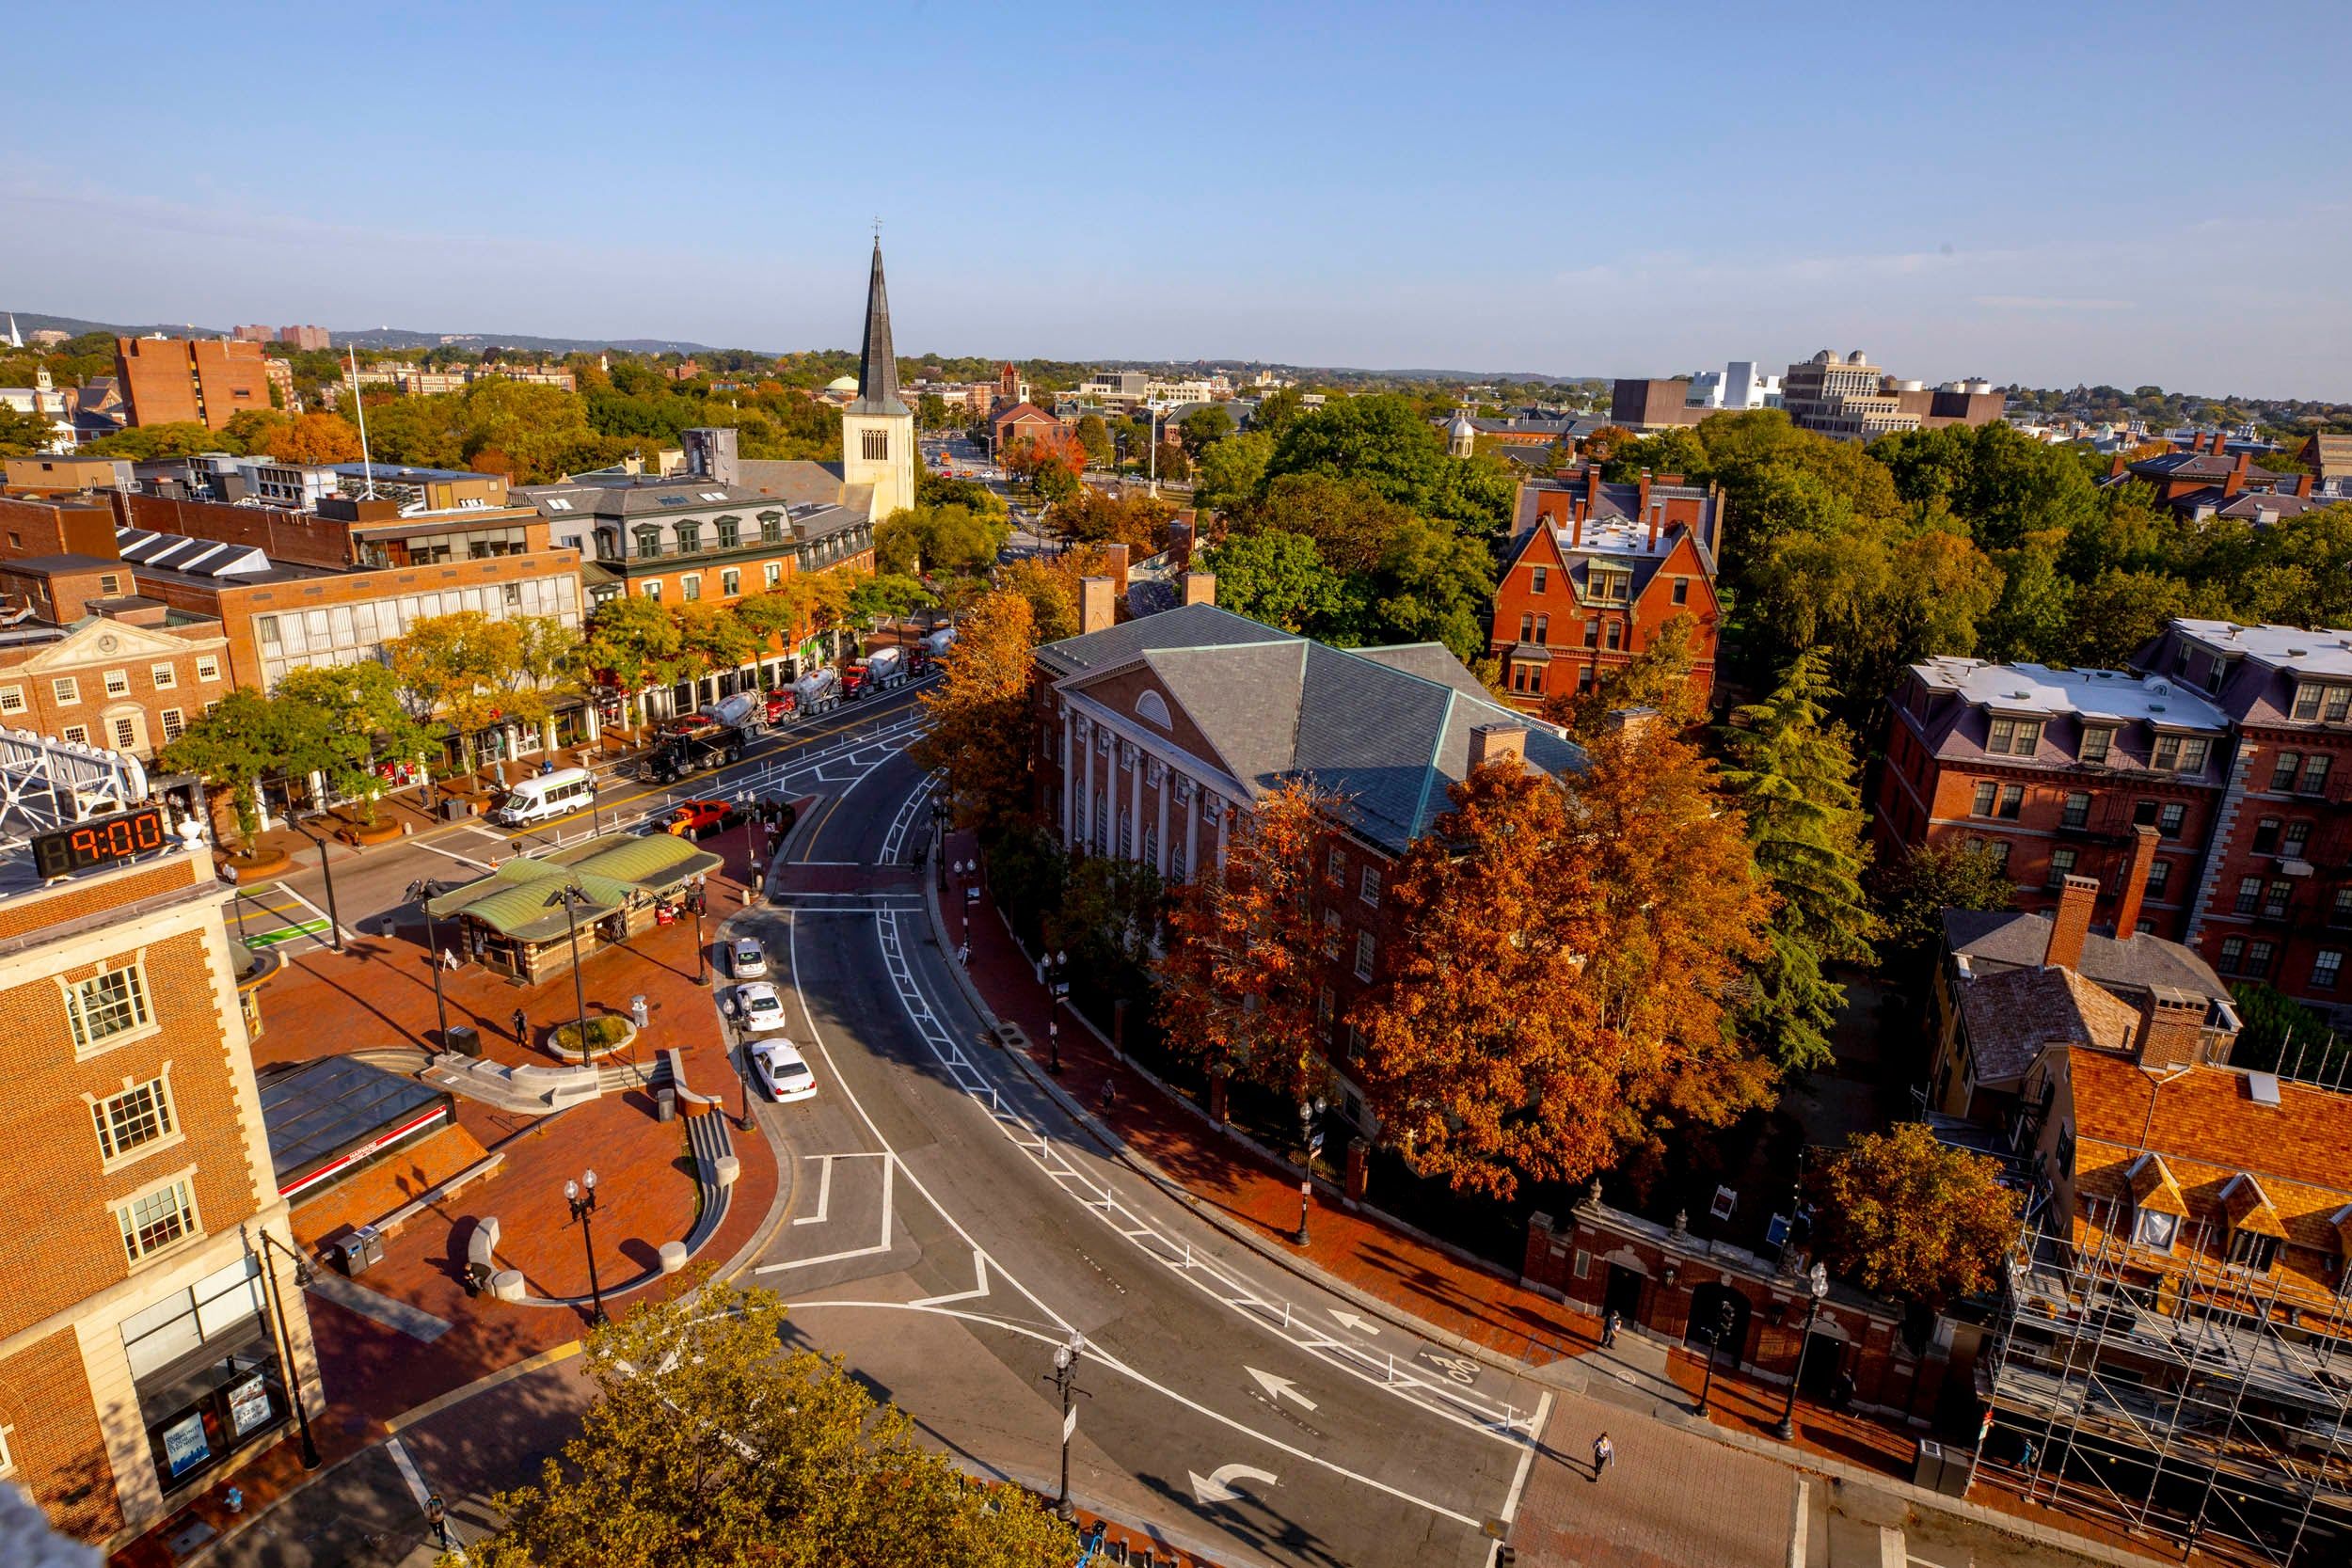 Capturing autumn's beauty on Harvard's historic campus